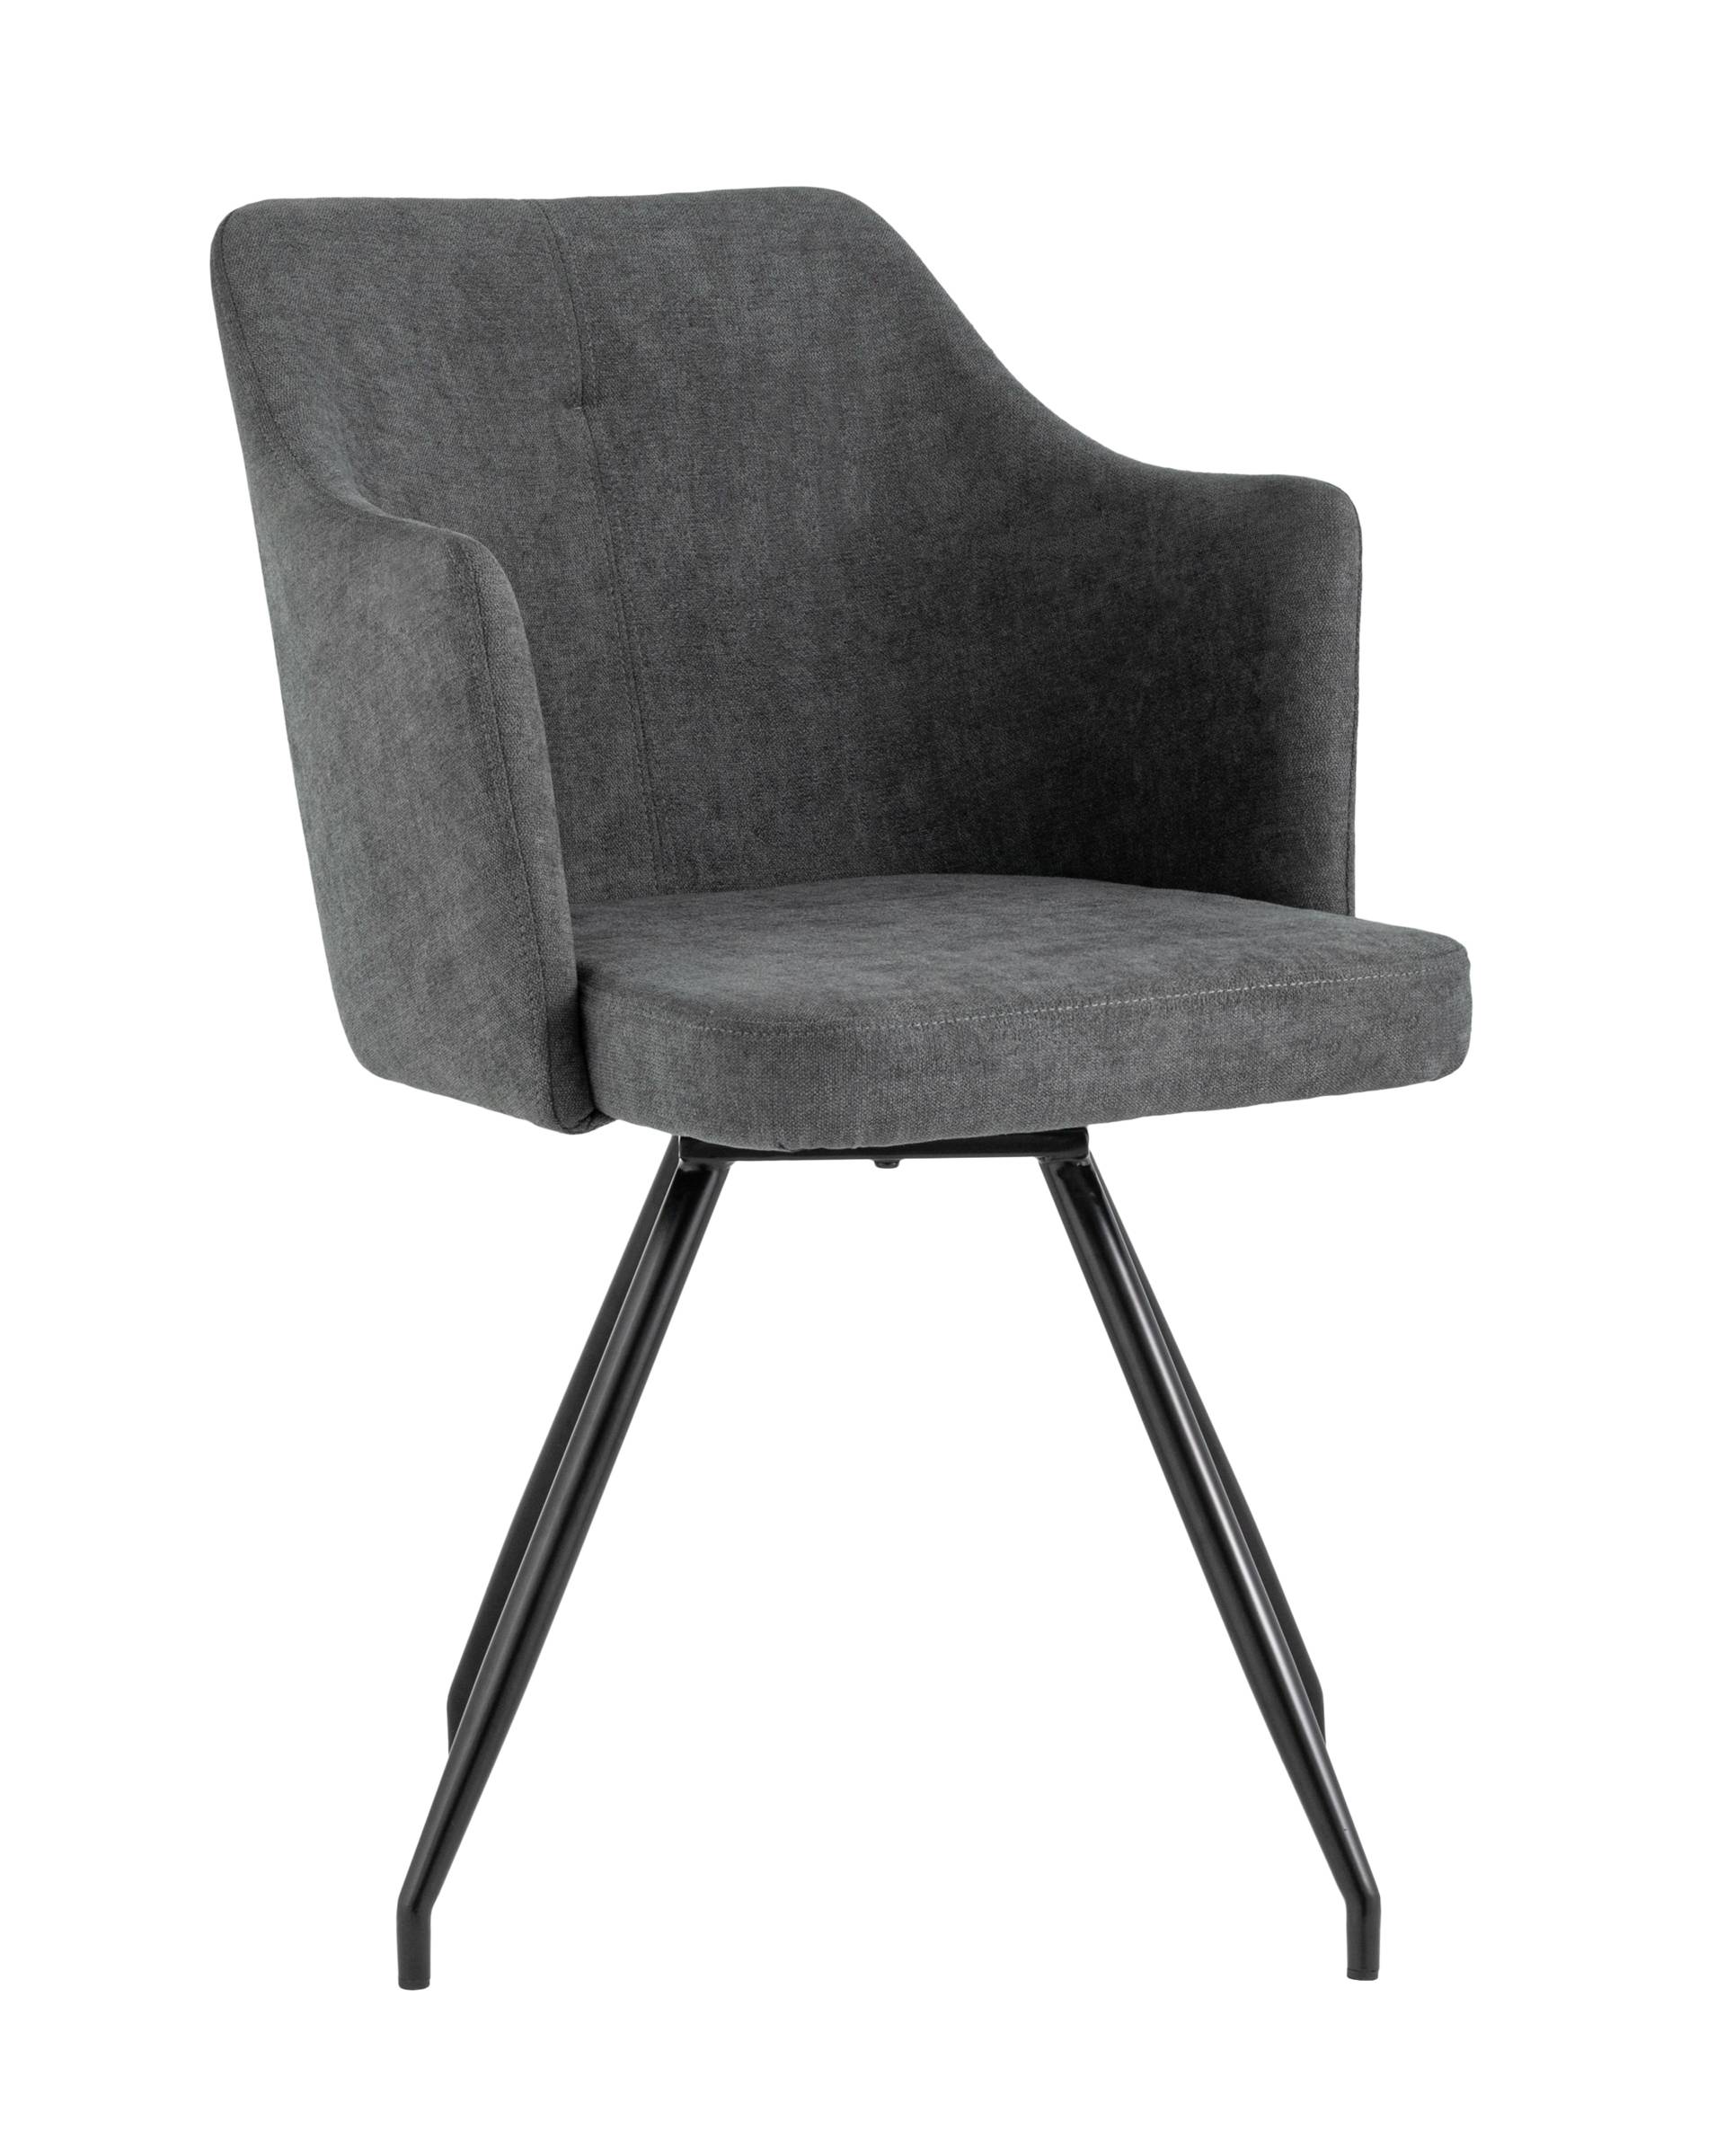 Обеденные стулья  The Furnish Стул слинг (stoolgroup) серый 53x86.0x56 см.